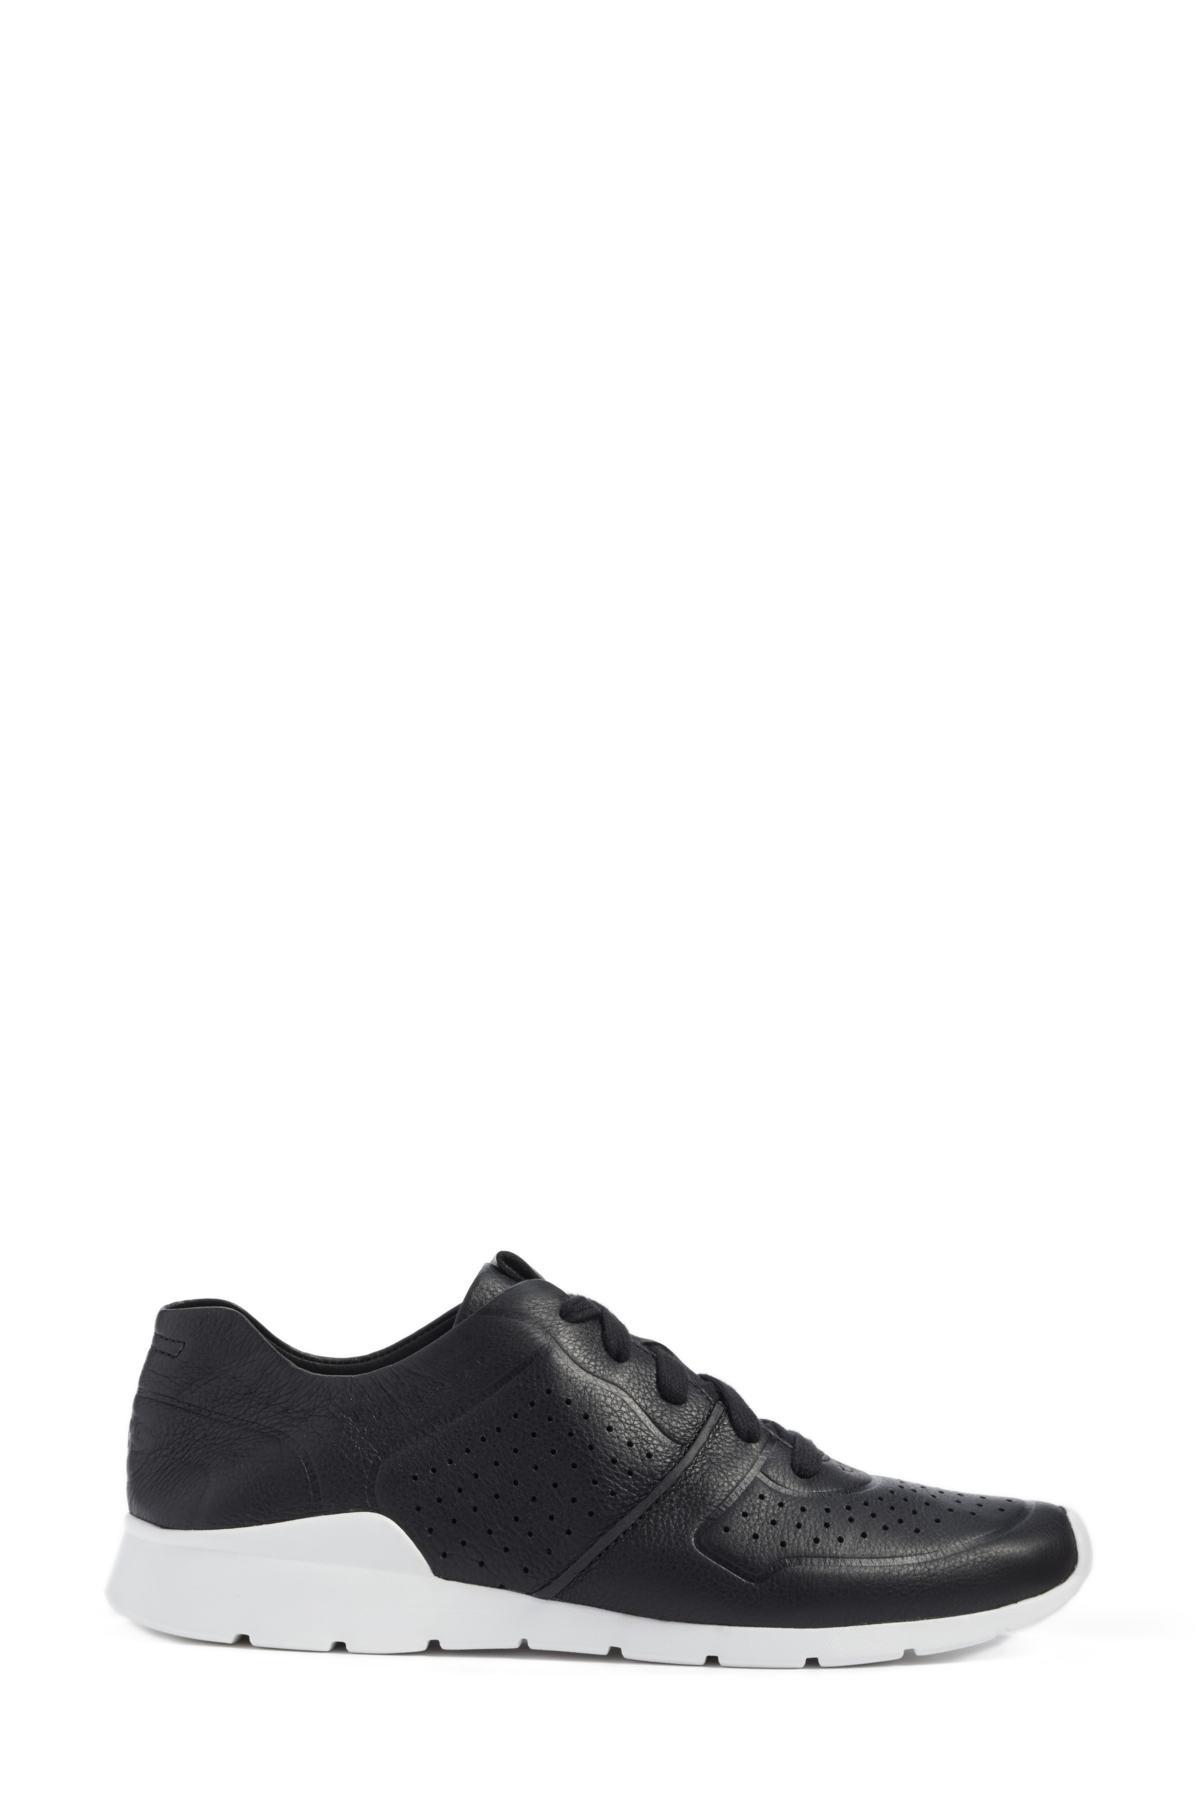 UGG Tye Sneaker in Black | Lyst